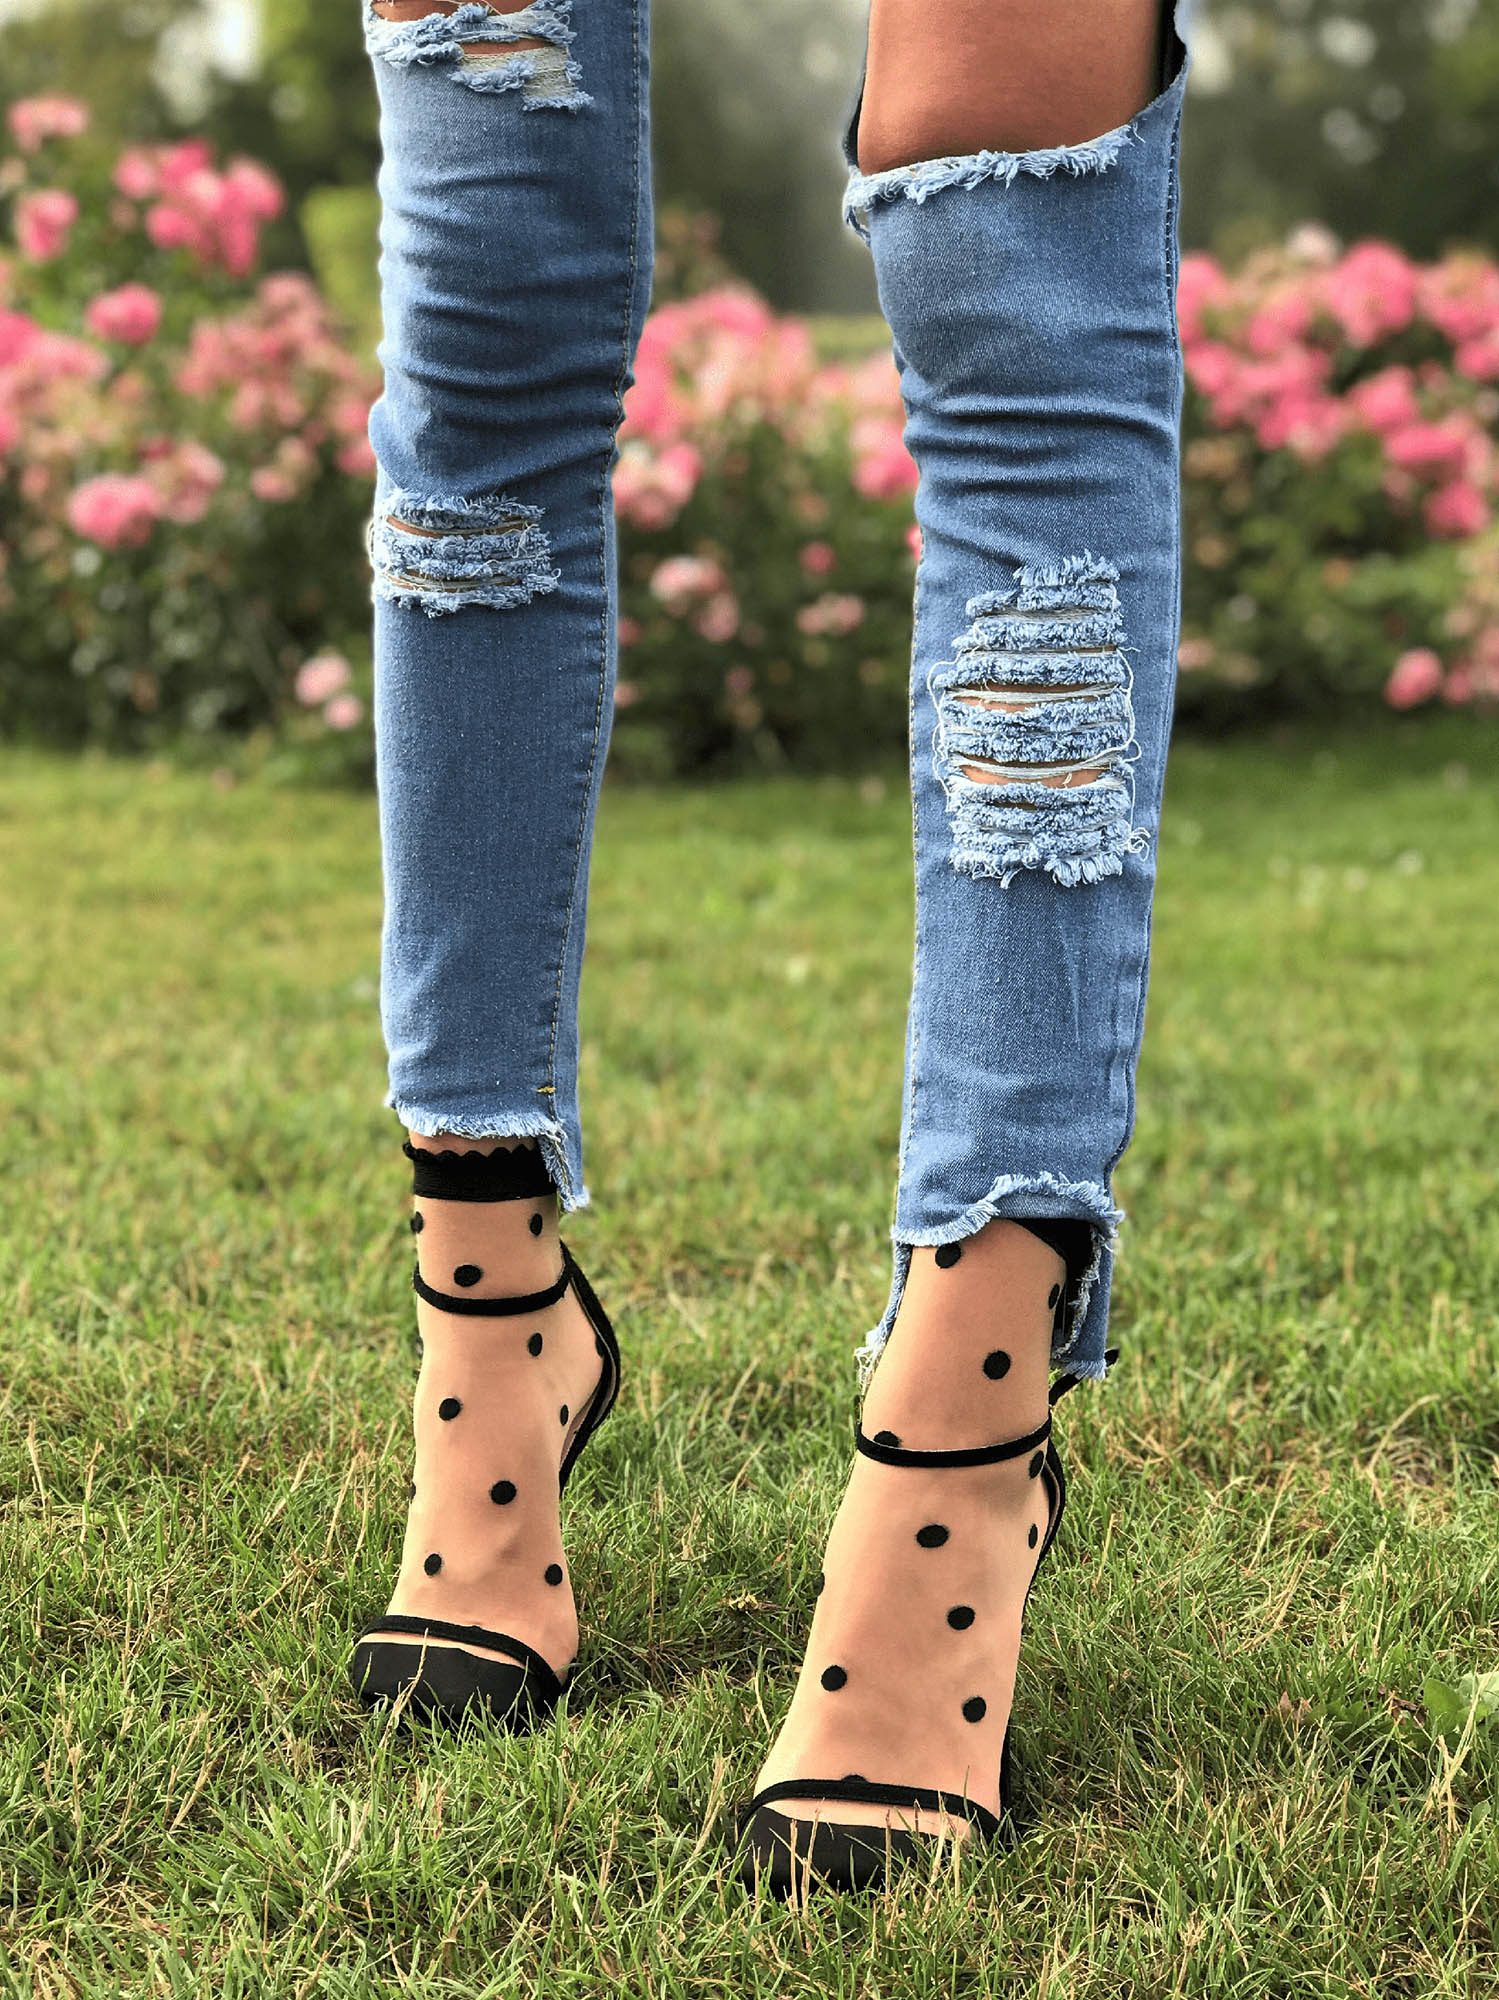 Женские фантазийные носочки с крупными точками Mona Puntini